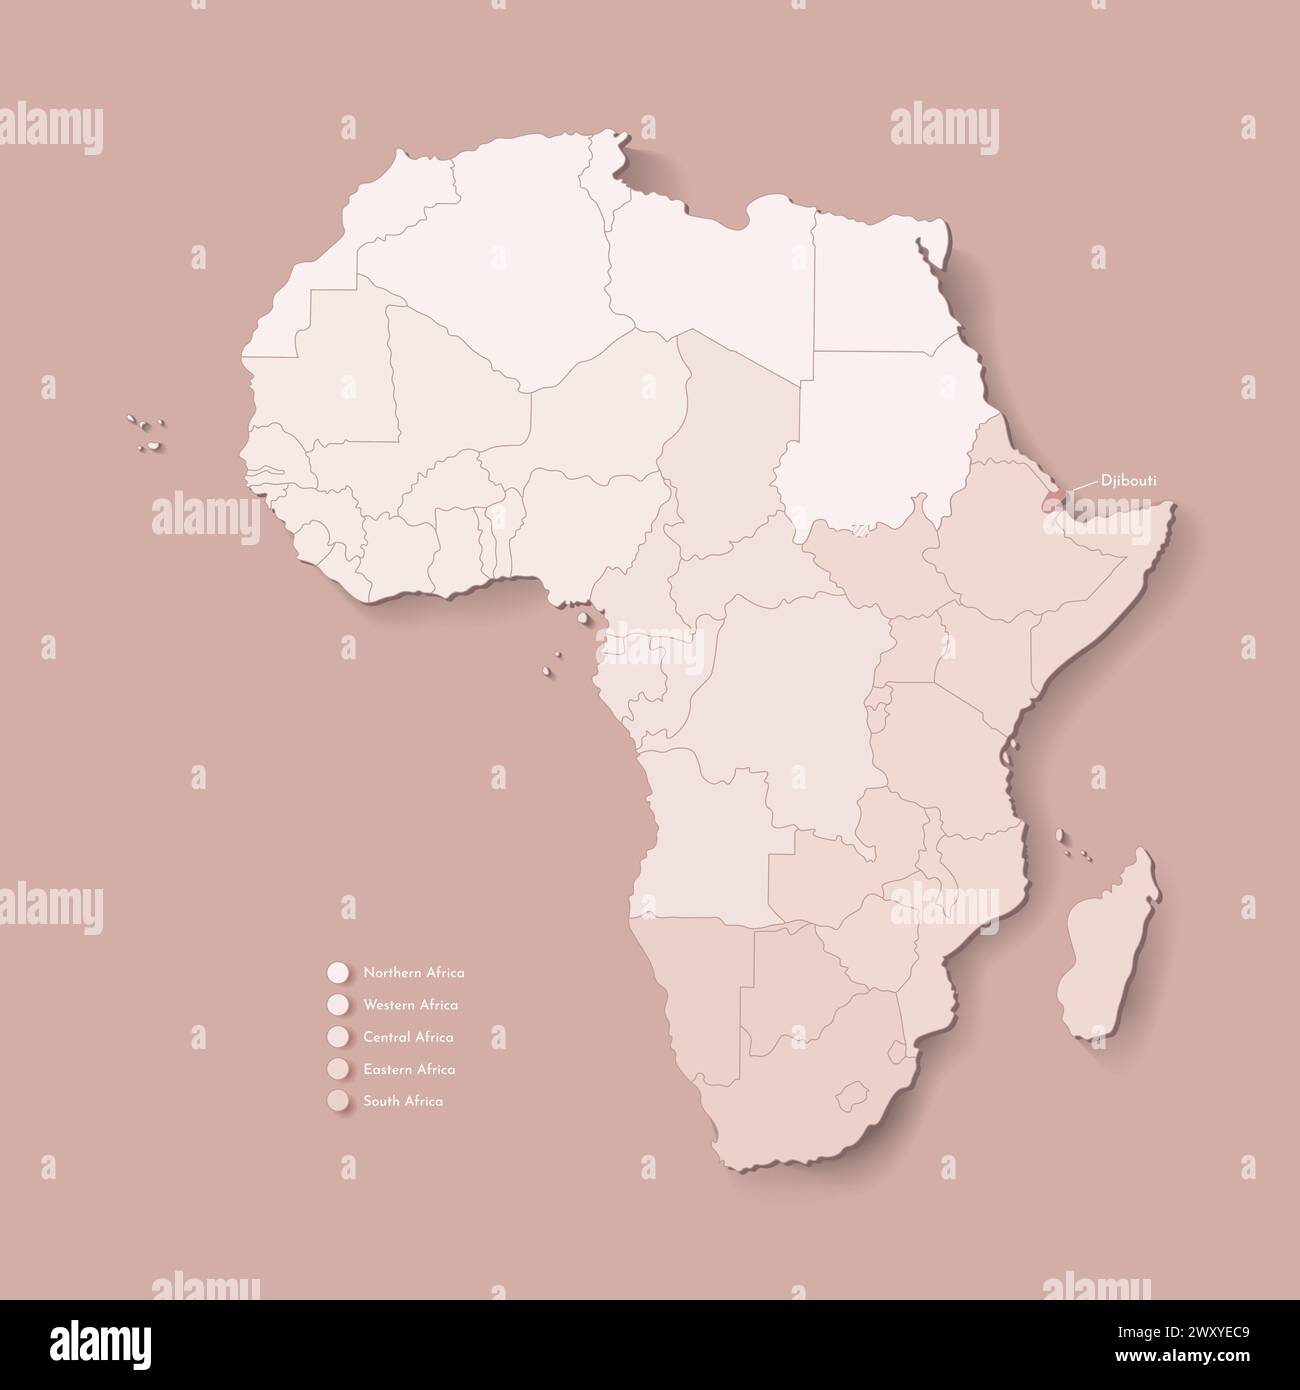 Illustrazione vettoriale con continente africano con confini di tutti gli stati e paese marcato Gibuti. Mappa politica di colore marrone con occidentale, sud A. Illustrazione Vettoriale